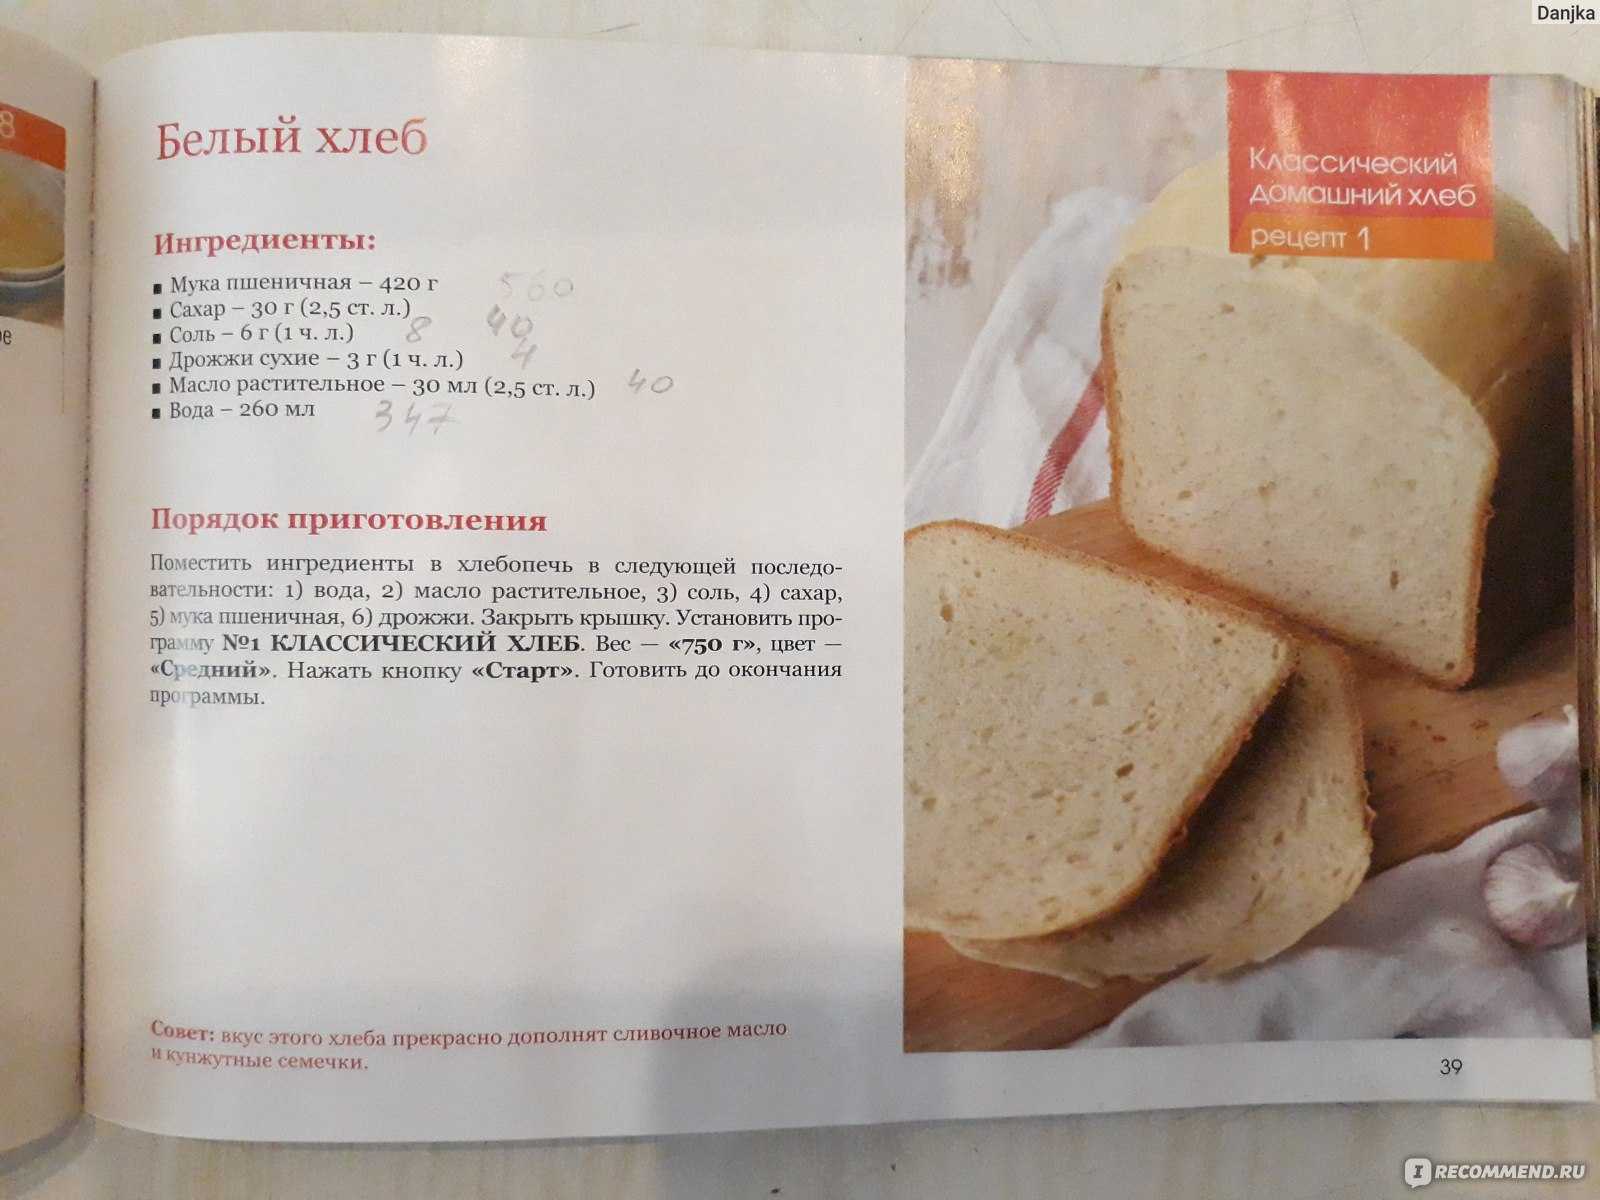 Приготовить в хлебопечке рецепты. Рецепт хлеба в хлебопечке. Книжка с рецептами для хлебопечки. Рецепт белого хлеба в хлебопечке. Книжка с рецептами для хлебопечки редмонд.